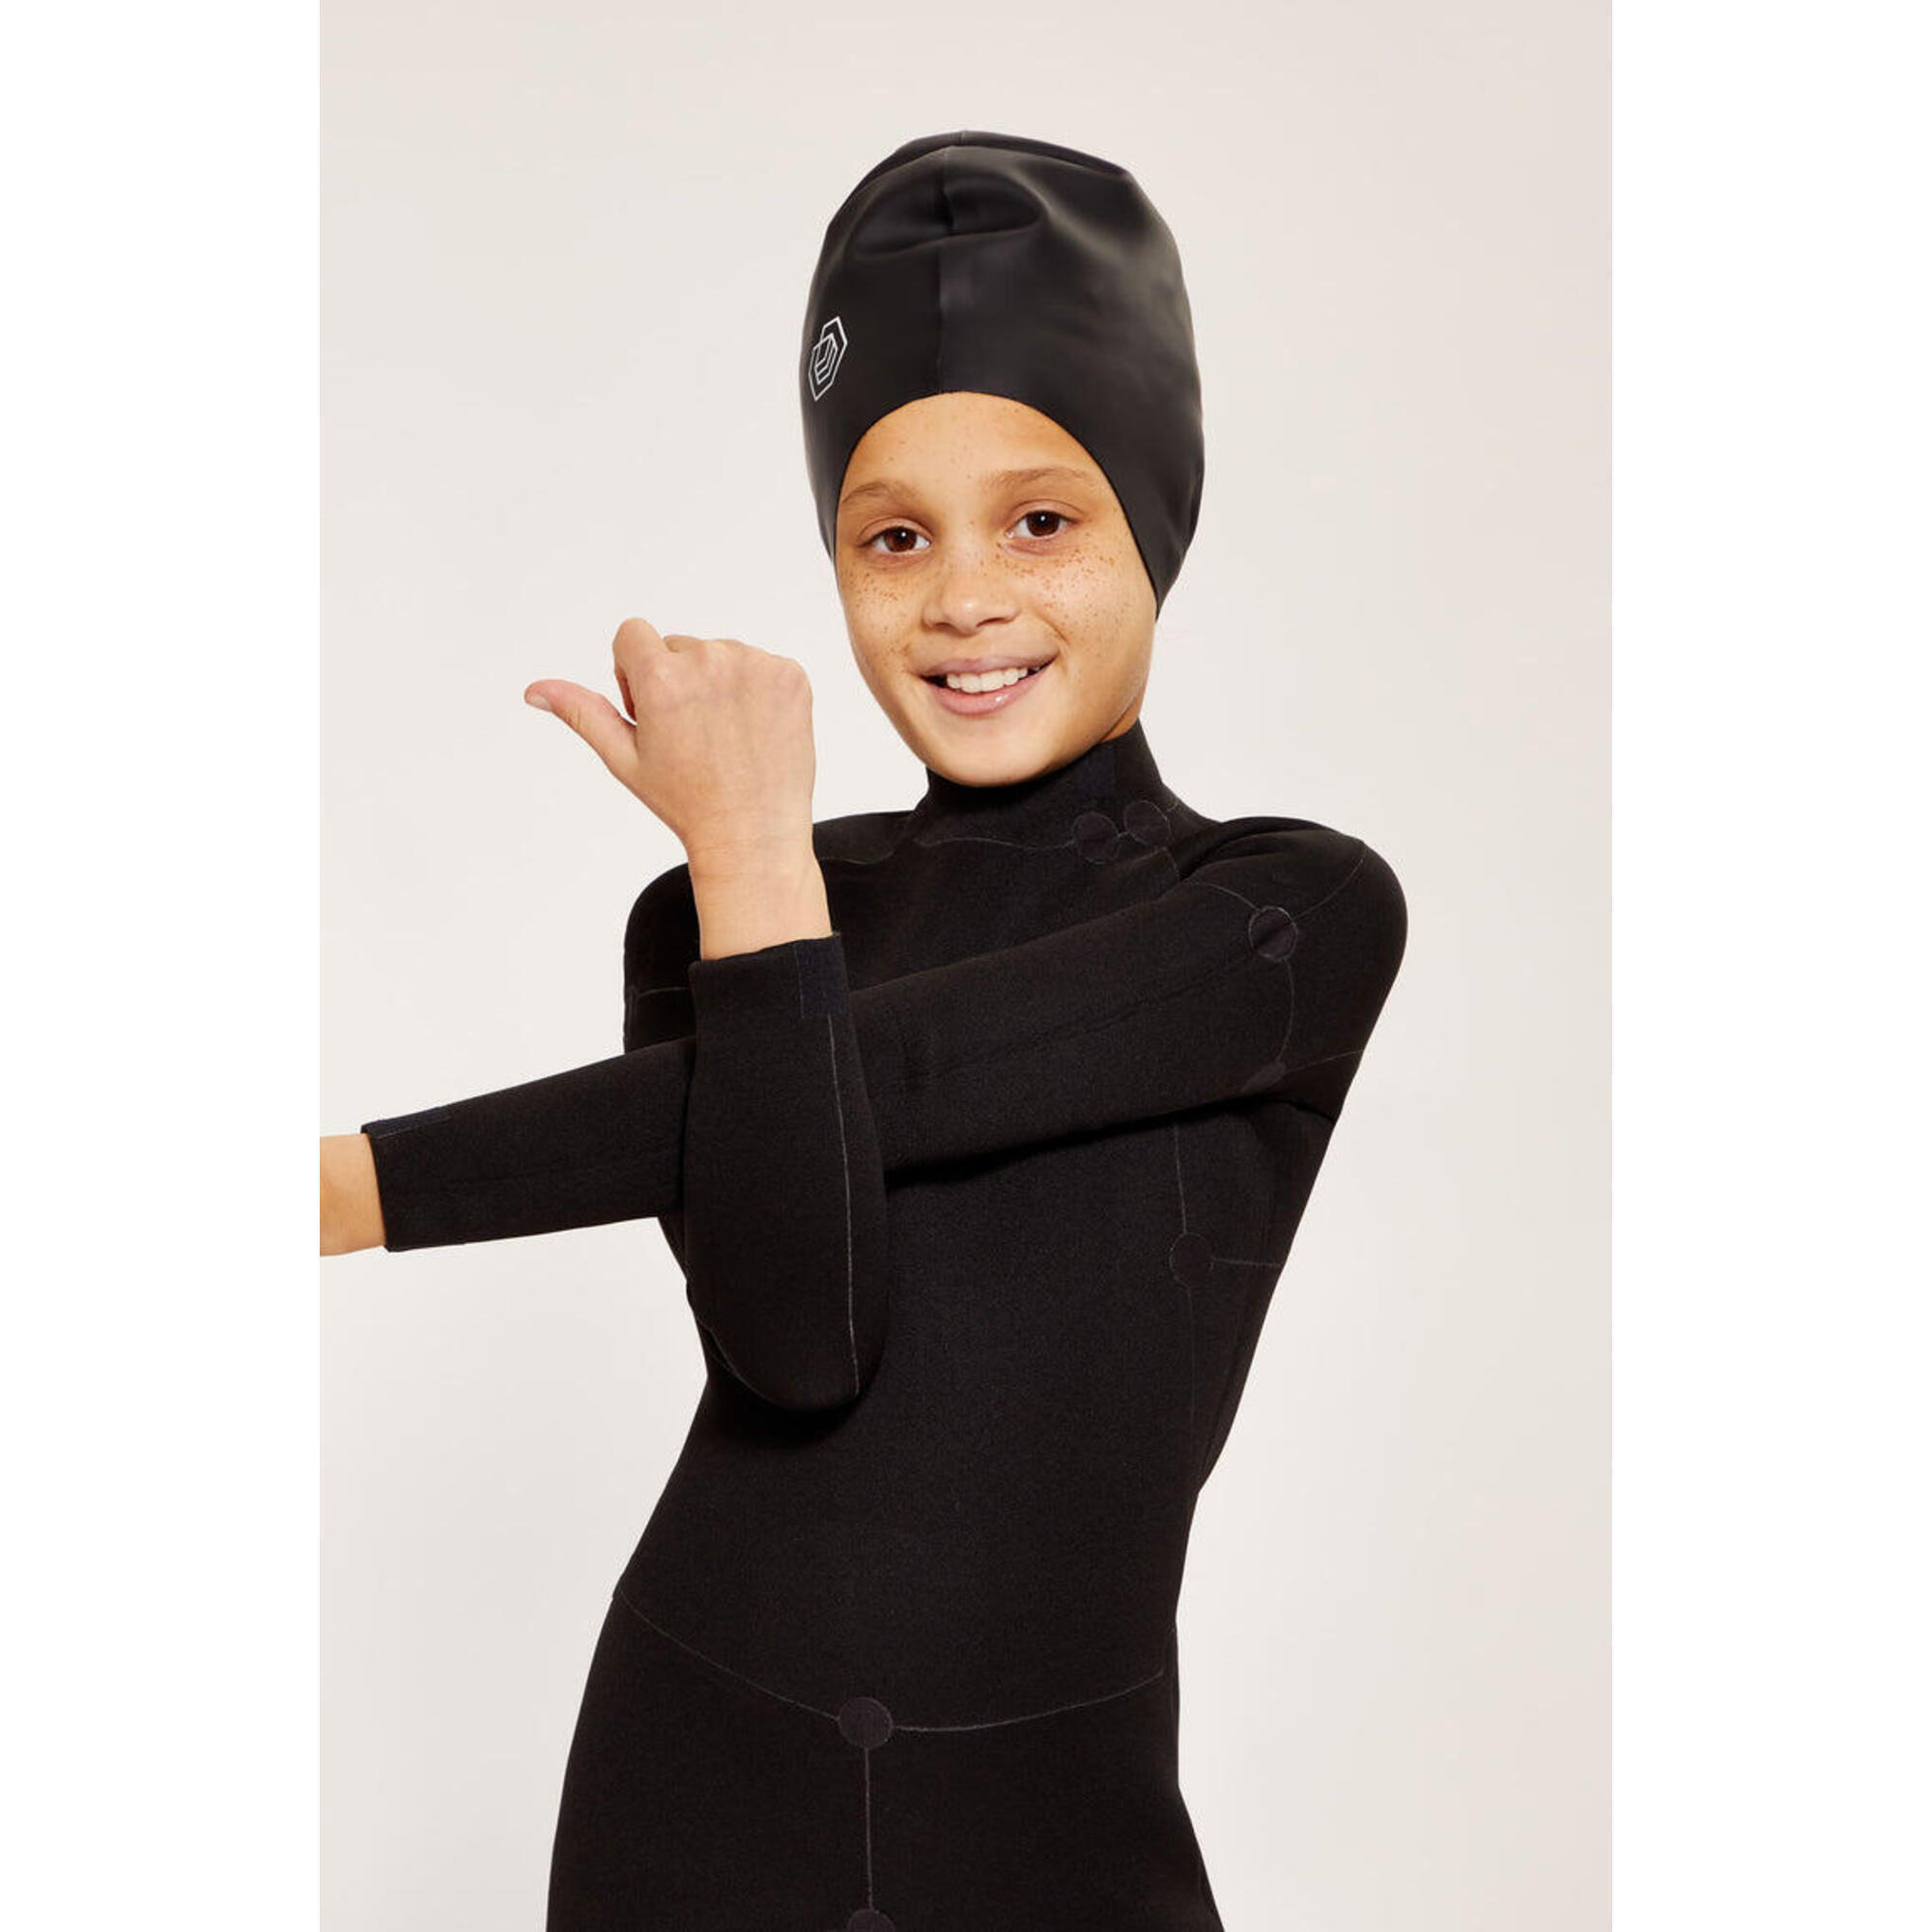 Children's Swim Cap for Long Hair (Large) - Black 1/5